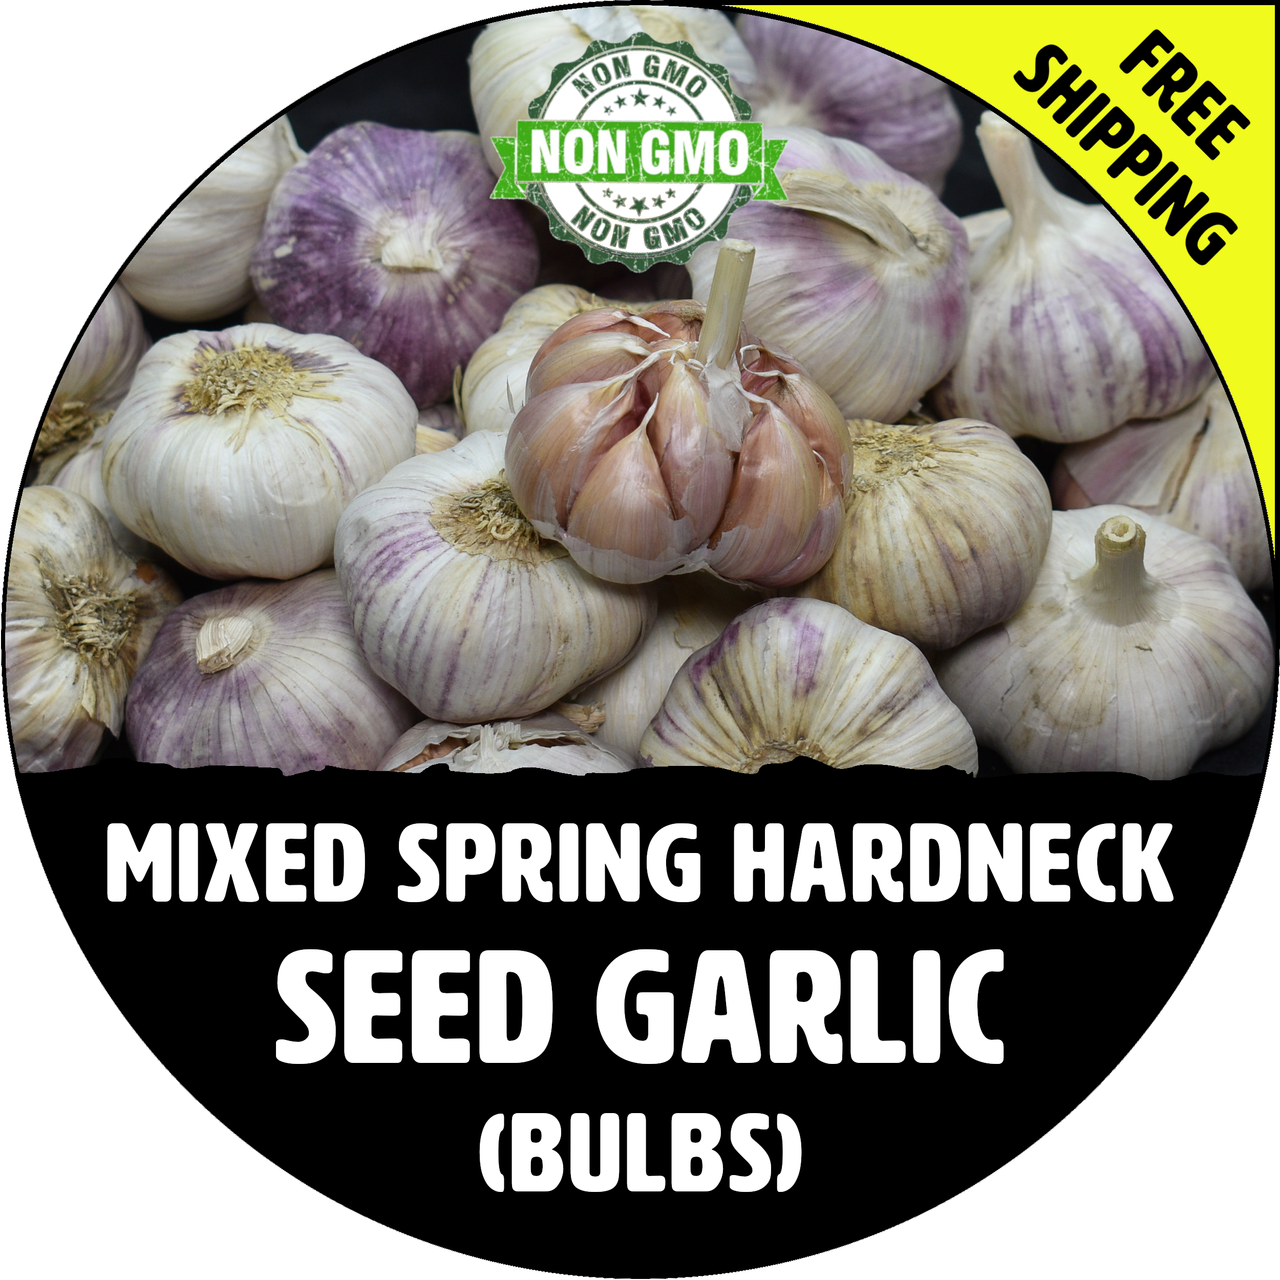 SPRING HARDNECK Seed Garlic (Mixed) - Non-GMO Bulbs & Cloves